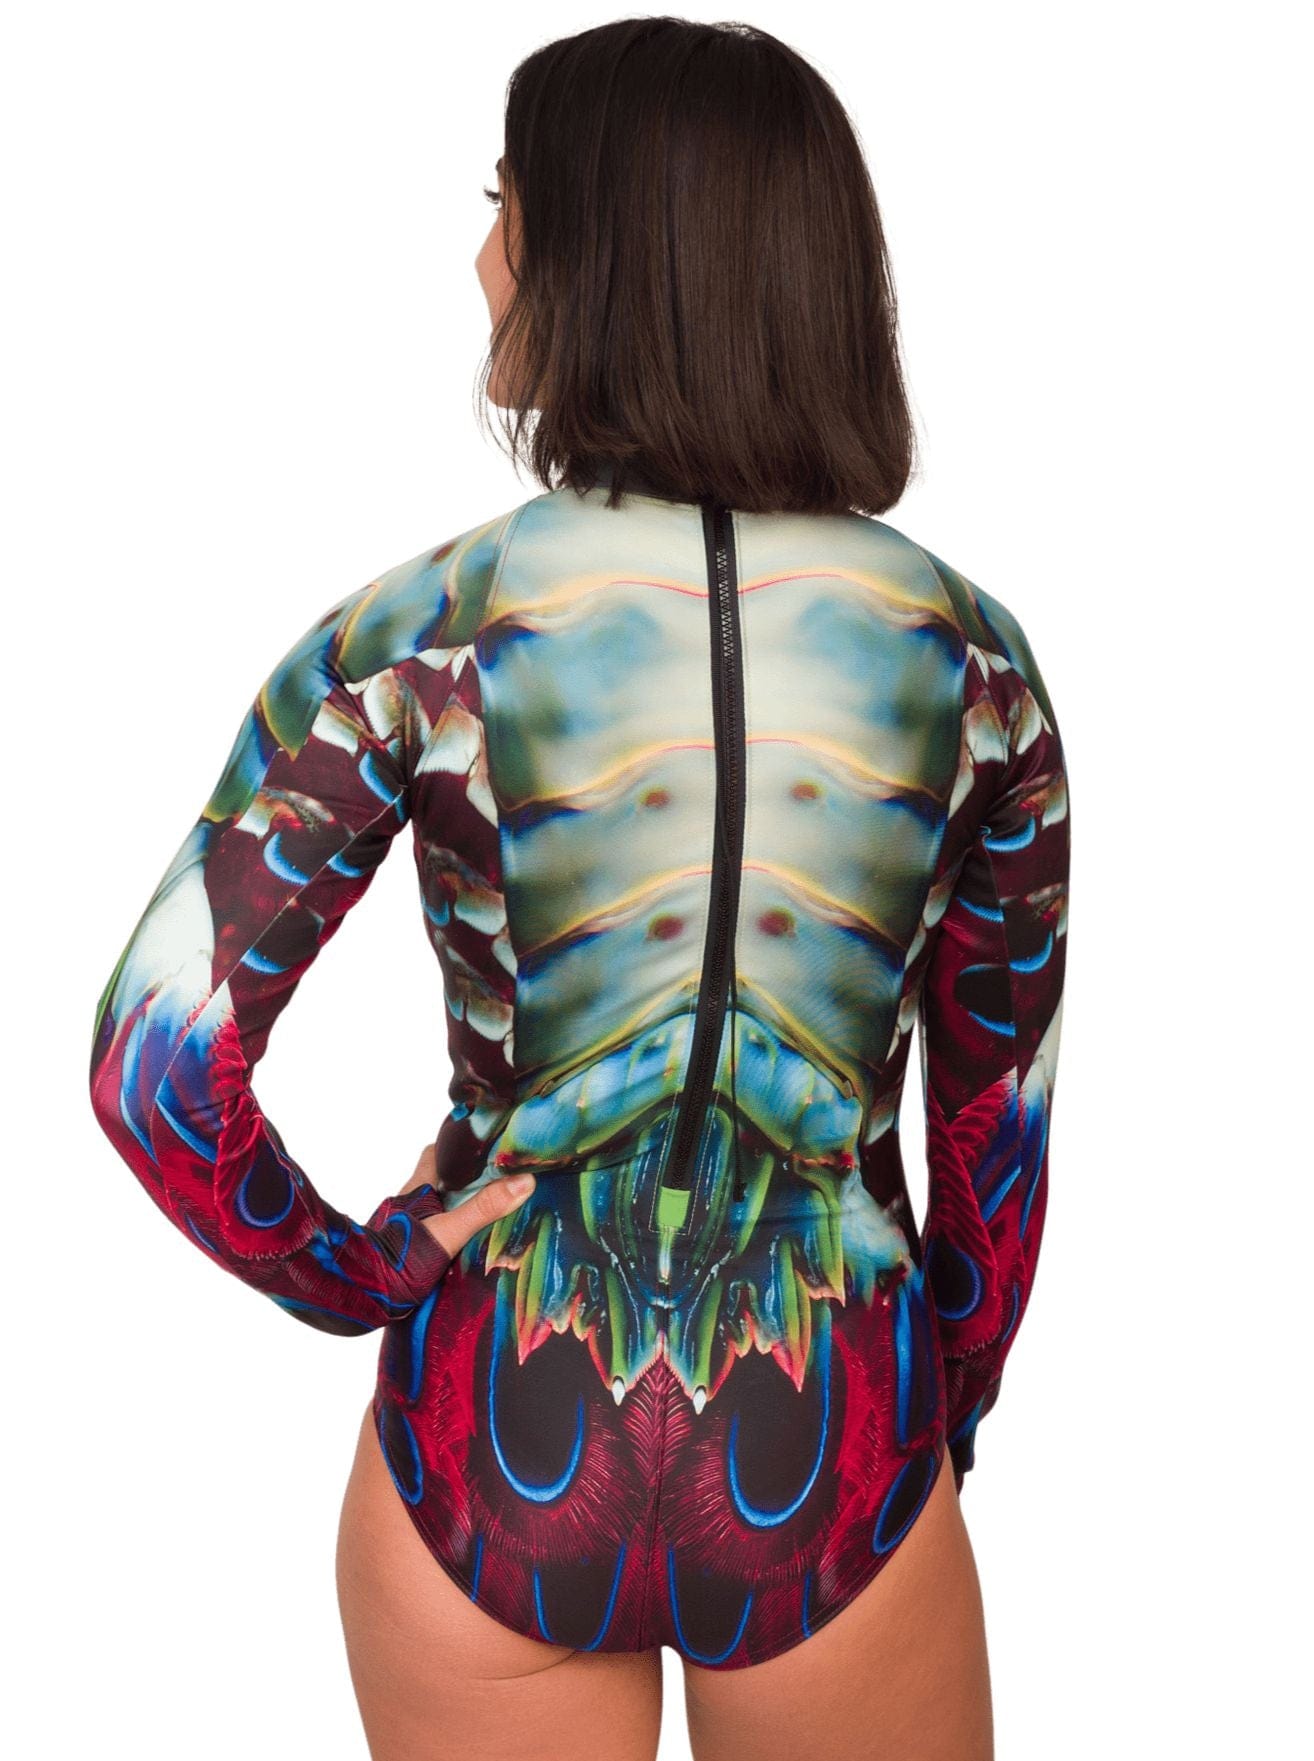 Peacock Mantis Shrimp Dive Skin, Surf Suit